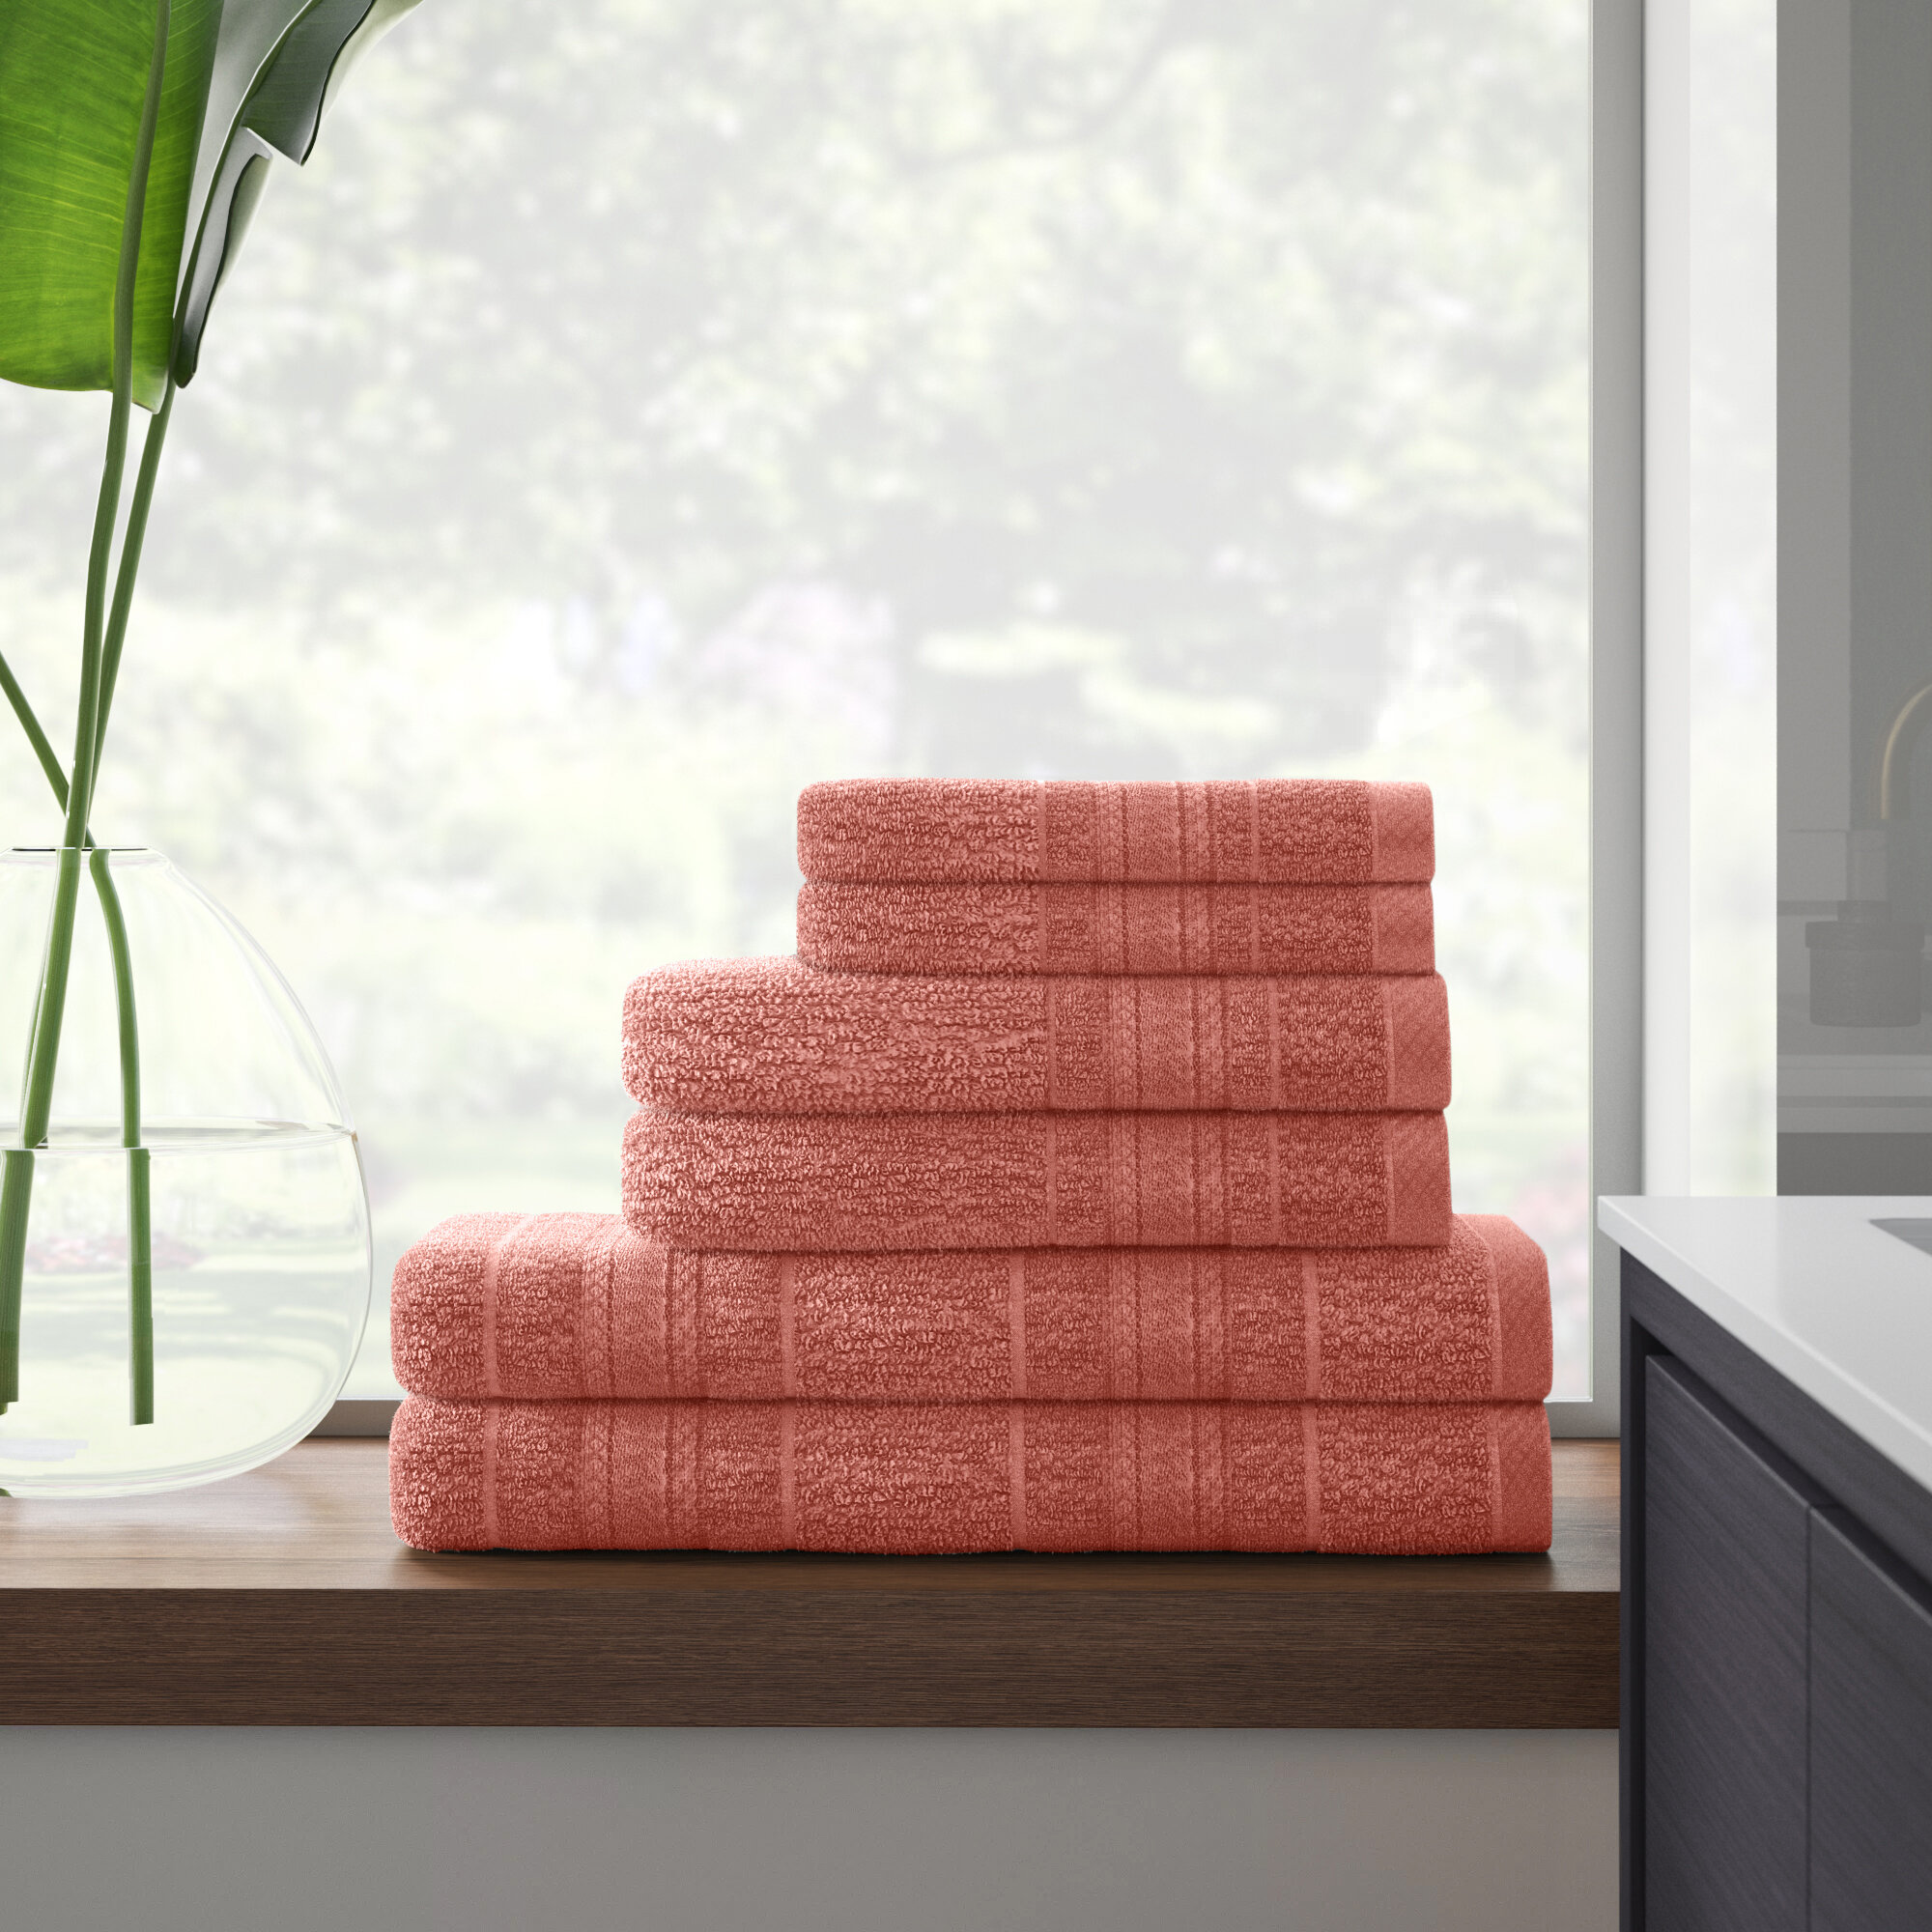 https://assets.wfcdn.com/im/21602691/compr-r85/1380/138088728/wayfair-basics-bruner-soft-cotton-quick-dry-bath-towel-6-piece-set.jpg